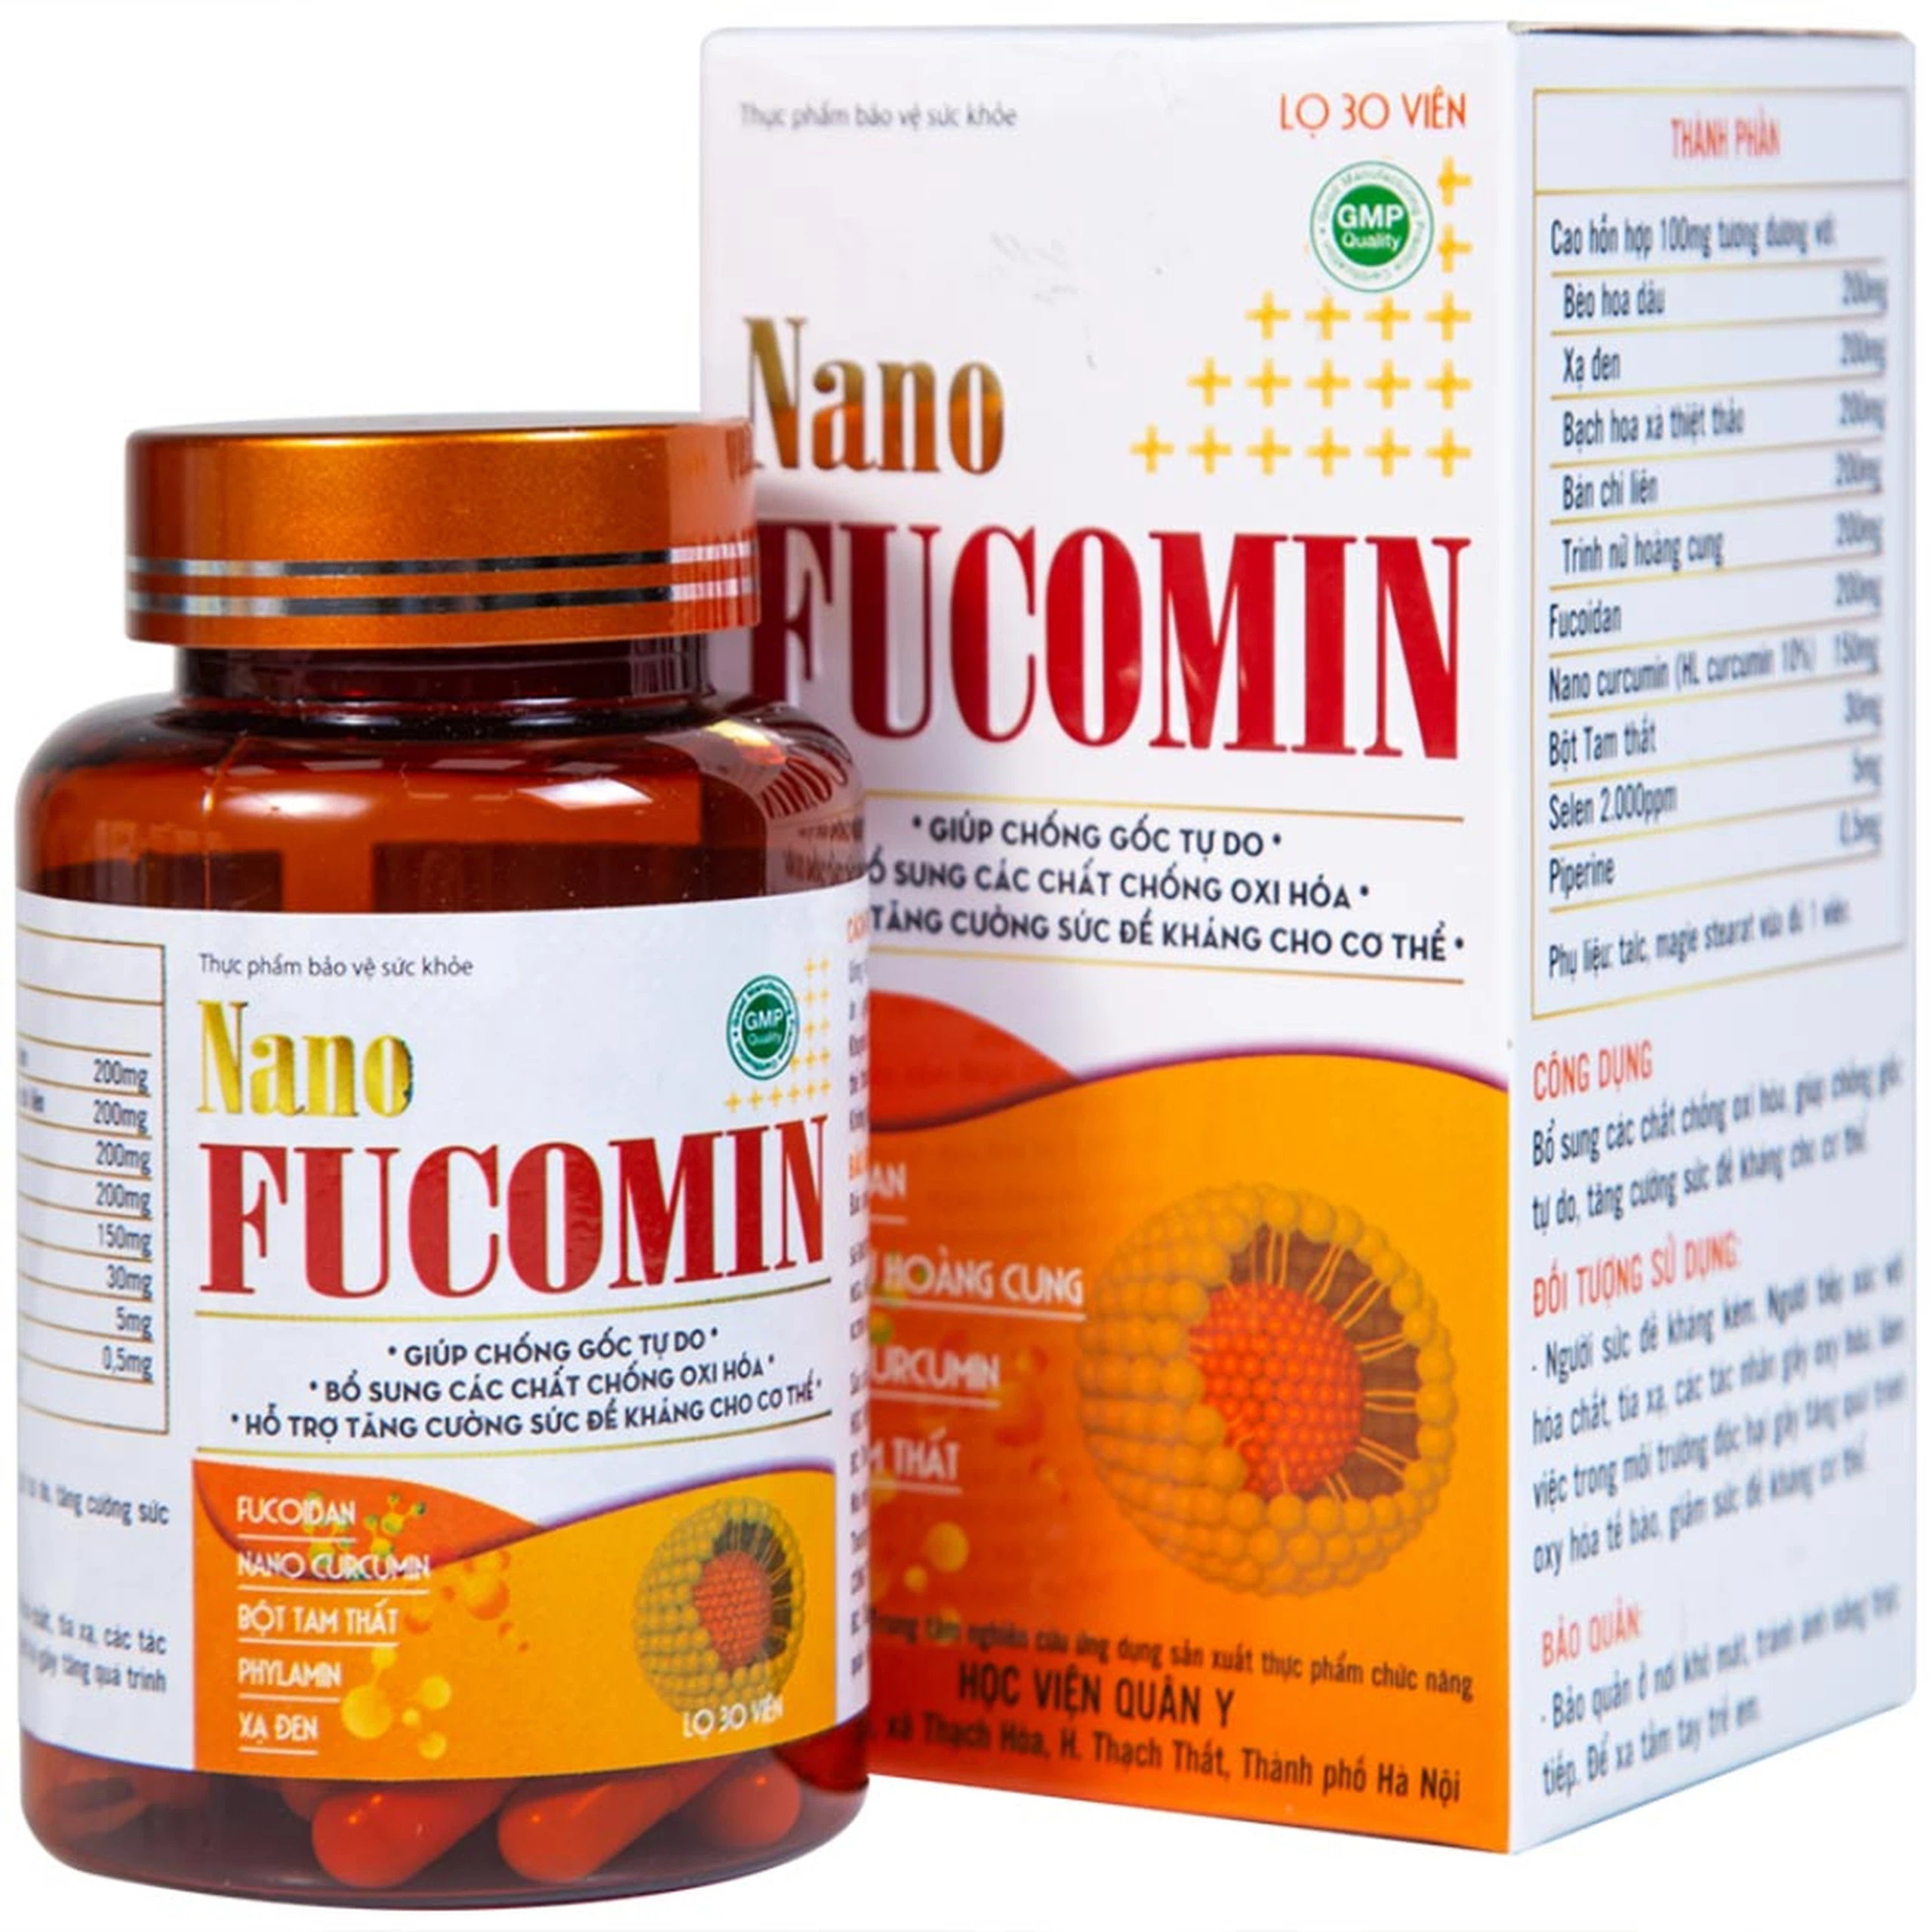 Viên uống Nano Fucomin HVQY hỗ trợ giảm tác dụng phụ của hóa trị giúp chống gốc tự do (30 viên)